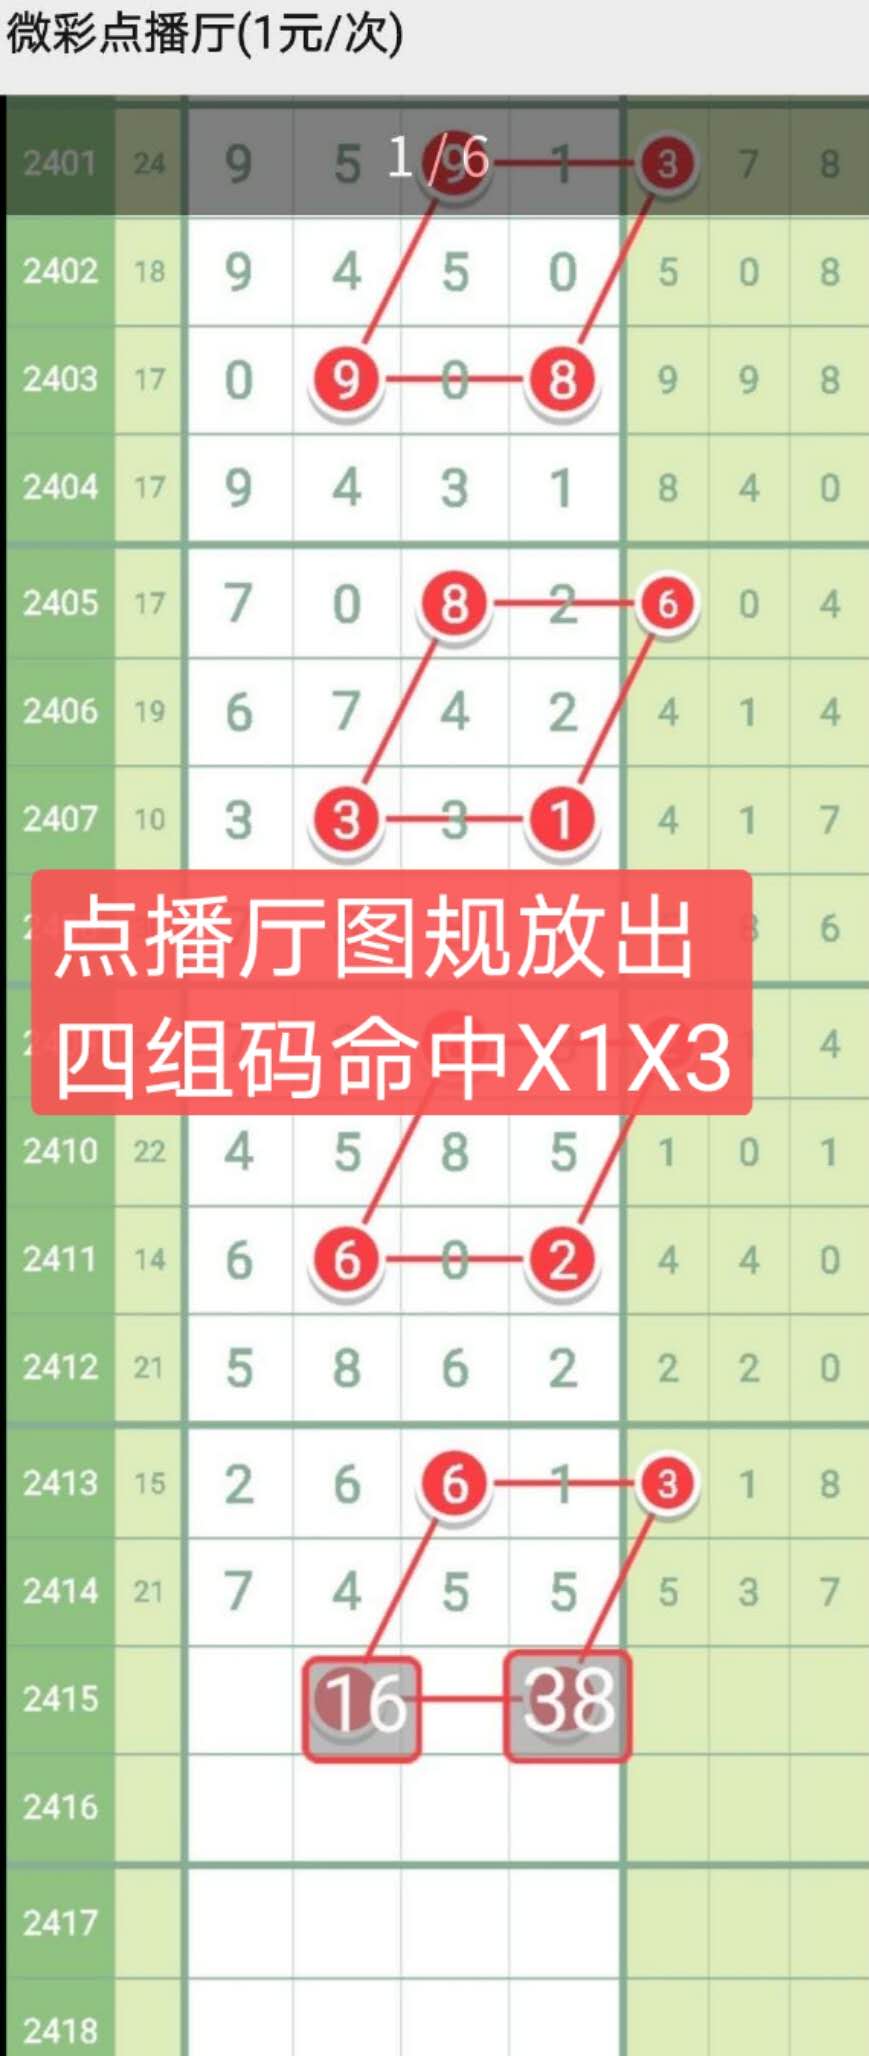 x1x3.jpg